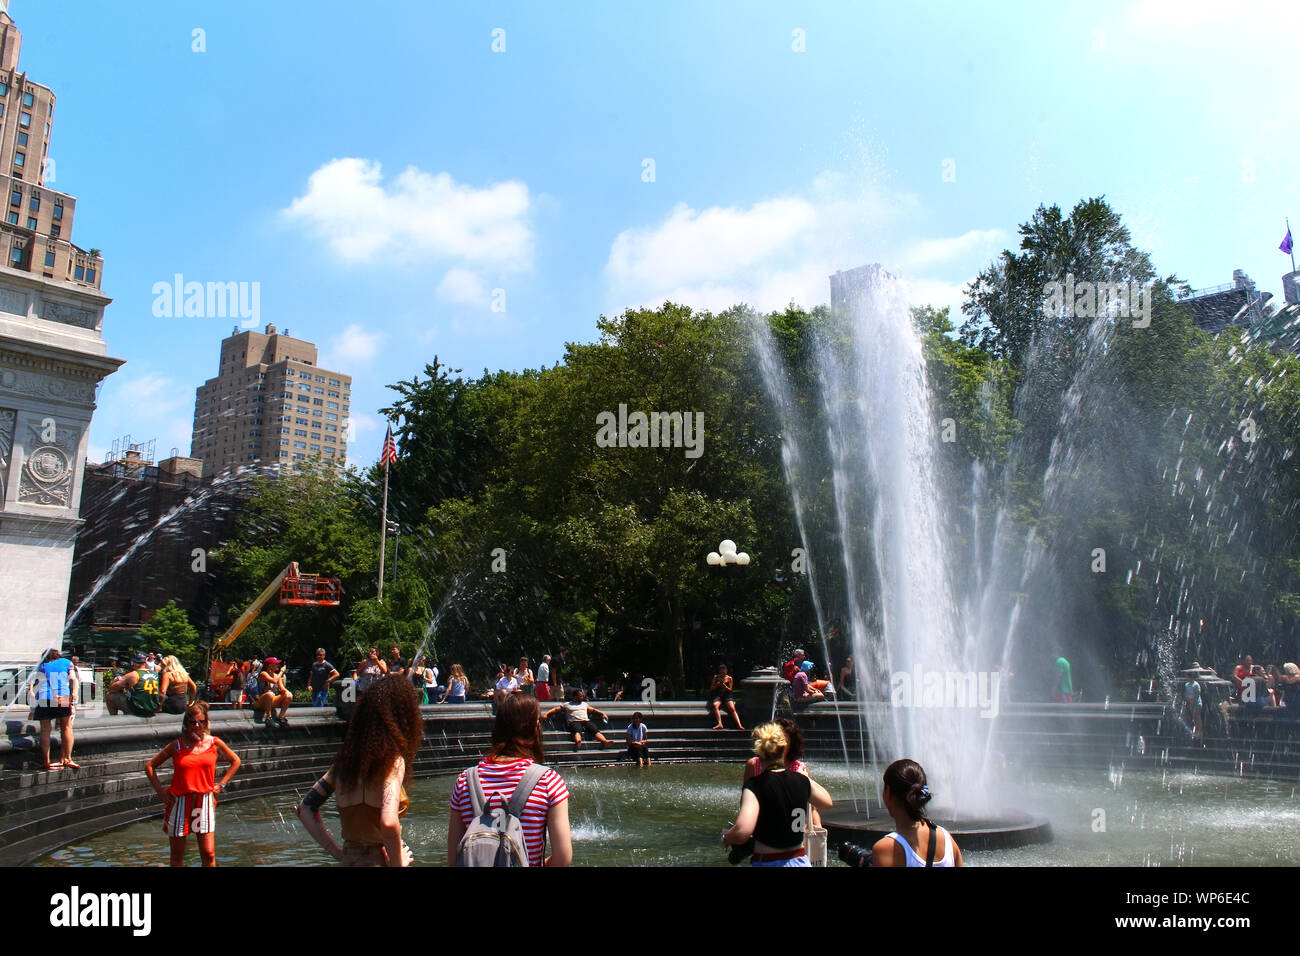 Aux personnes bénéficiant d'une chaude journée d'été à Washington Square Park à Manhattan sur fontaine Juillet 19th, 2019 à New York, USA. (Photo par Wojciech Migda) Banque D'Images